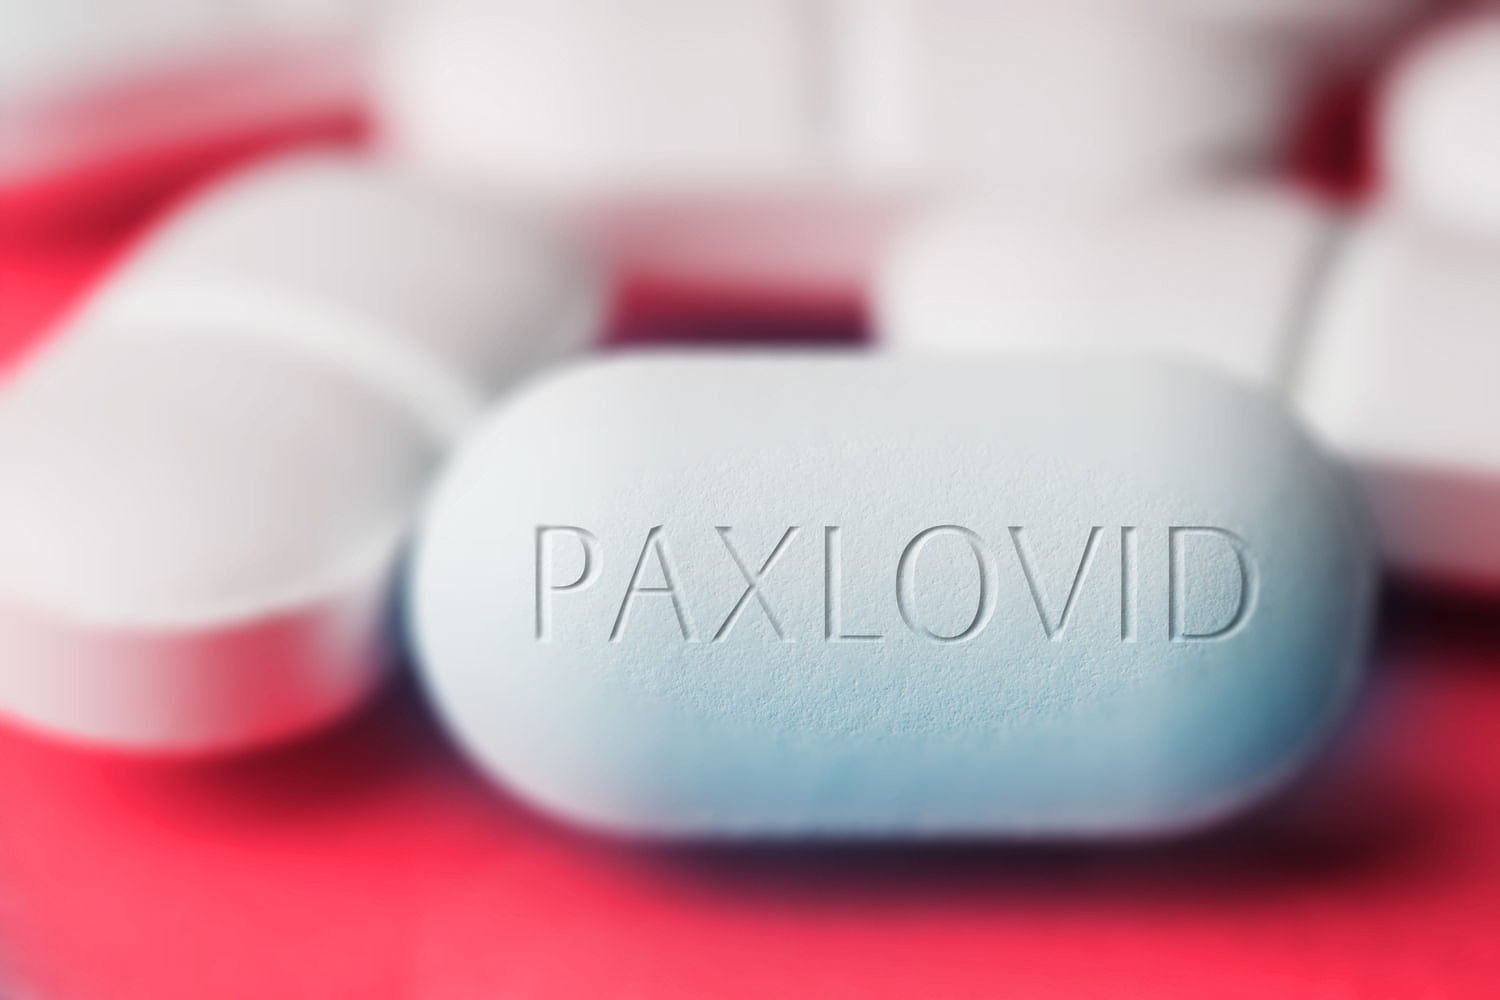 L’Europa approva il farmaco Paxlovid di Pfizer